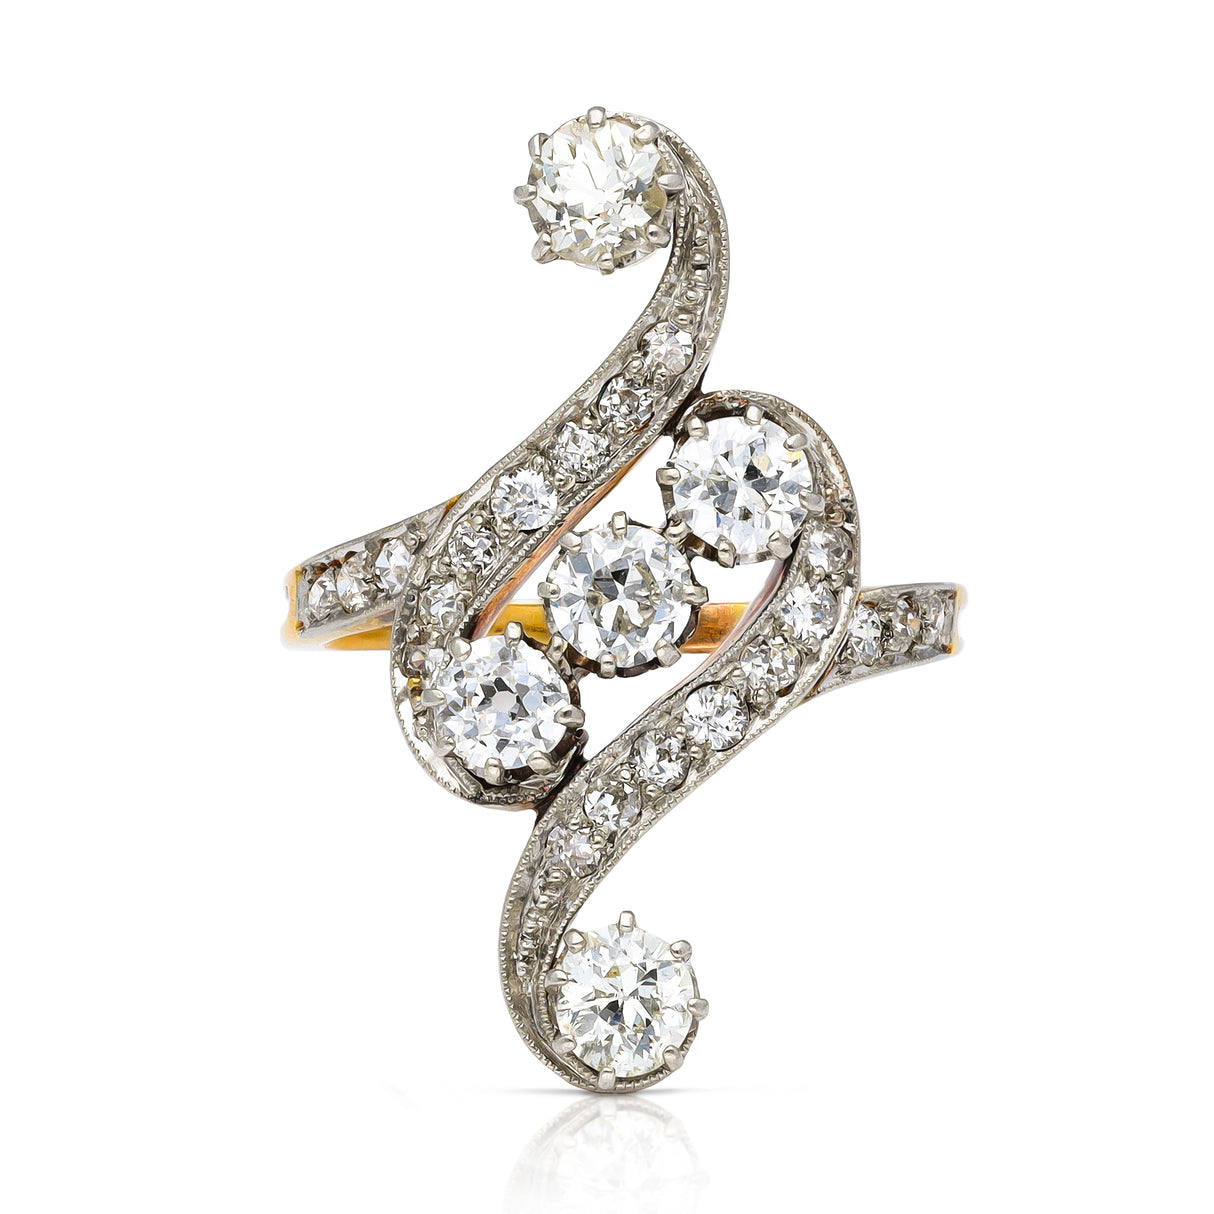 Art Nouveau diamond engagement ring, front view.